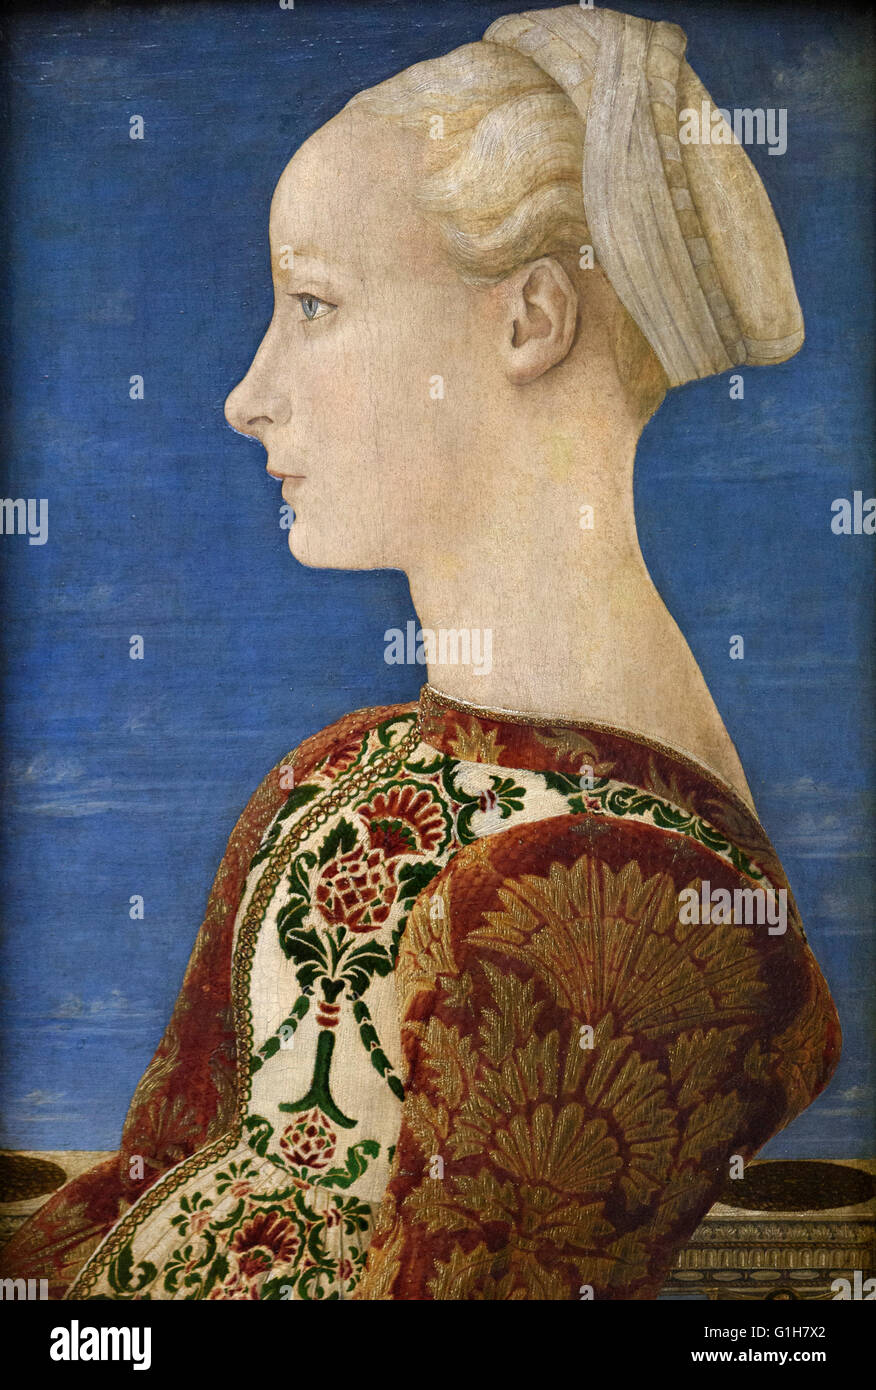 Antonio del Pollaiuolo (ca.1431-1498), il Ritratto di una giovane donna, Profilbildnis einer jungen Frau, ca. 1460-1465. Foto Stock